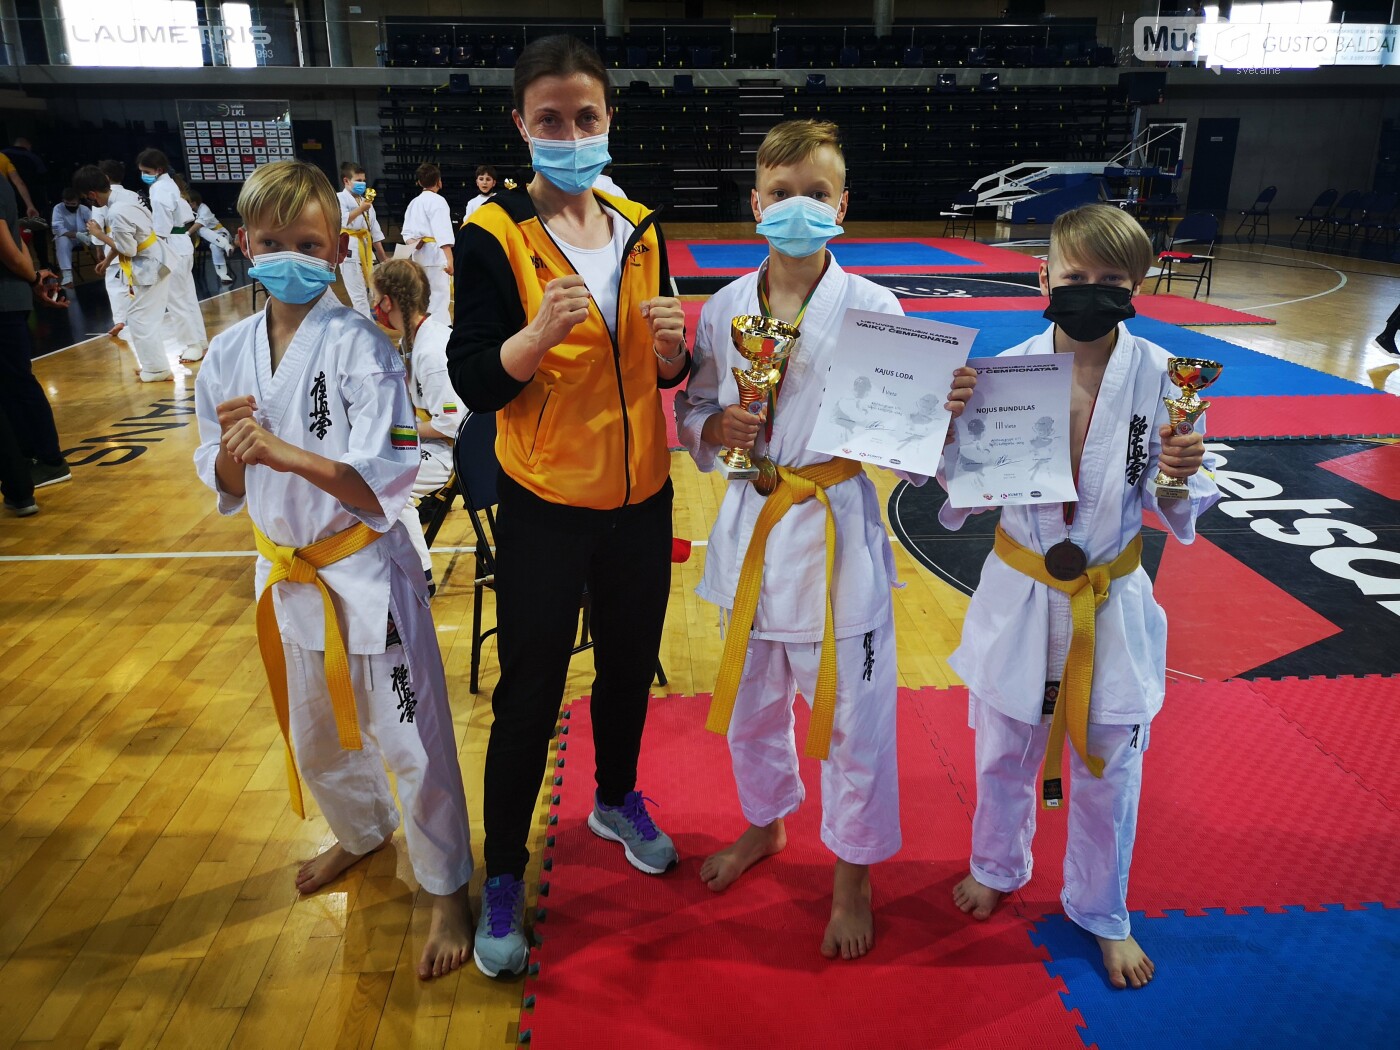 Nuotraukoje (iš kairės i dešinę): Gustui Loda, trenerė Kristina Basova, Kajus Loda 1 vieta ir Nojus Bundulas 2 vieta